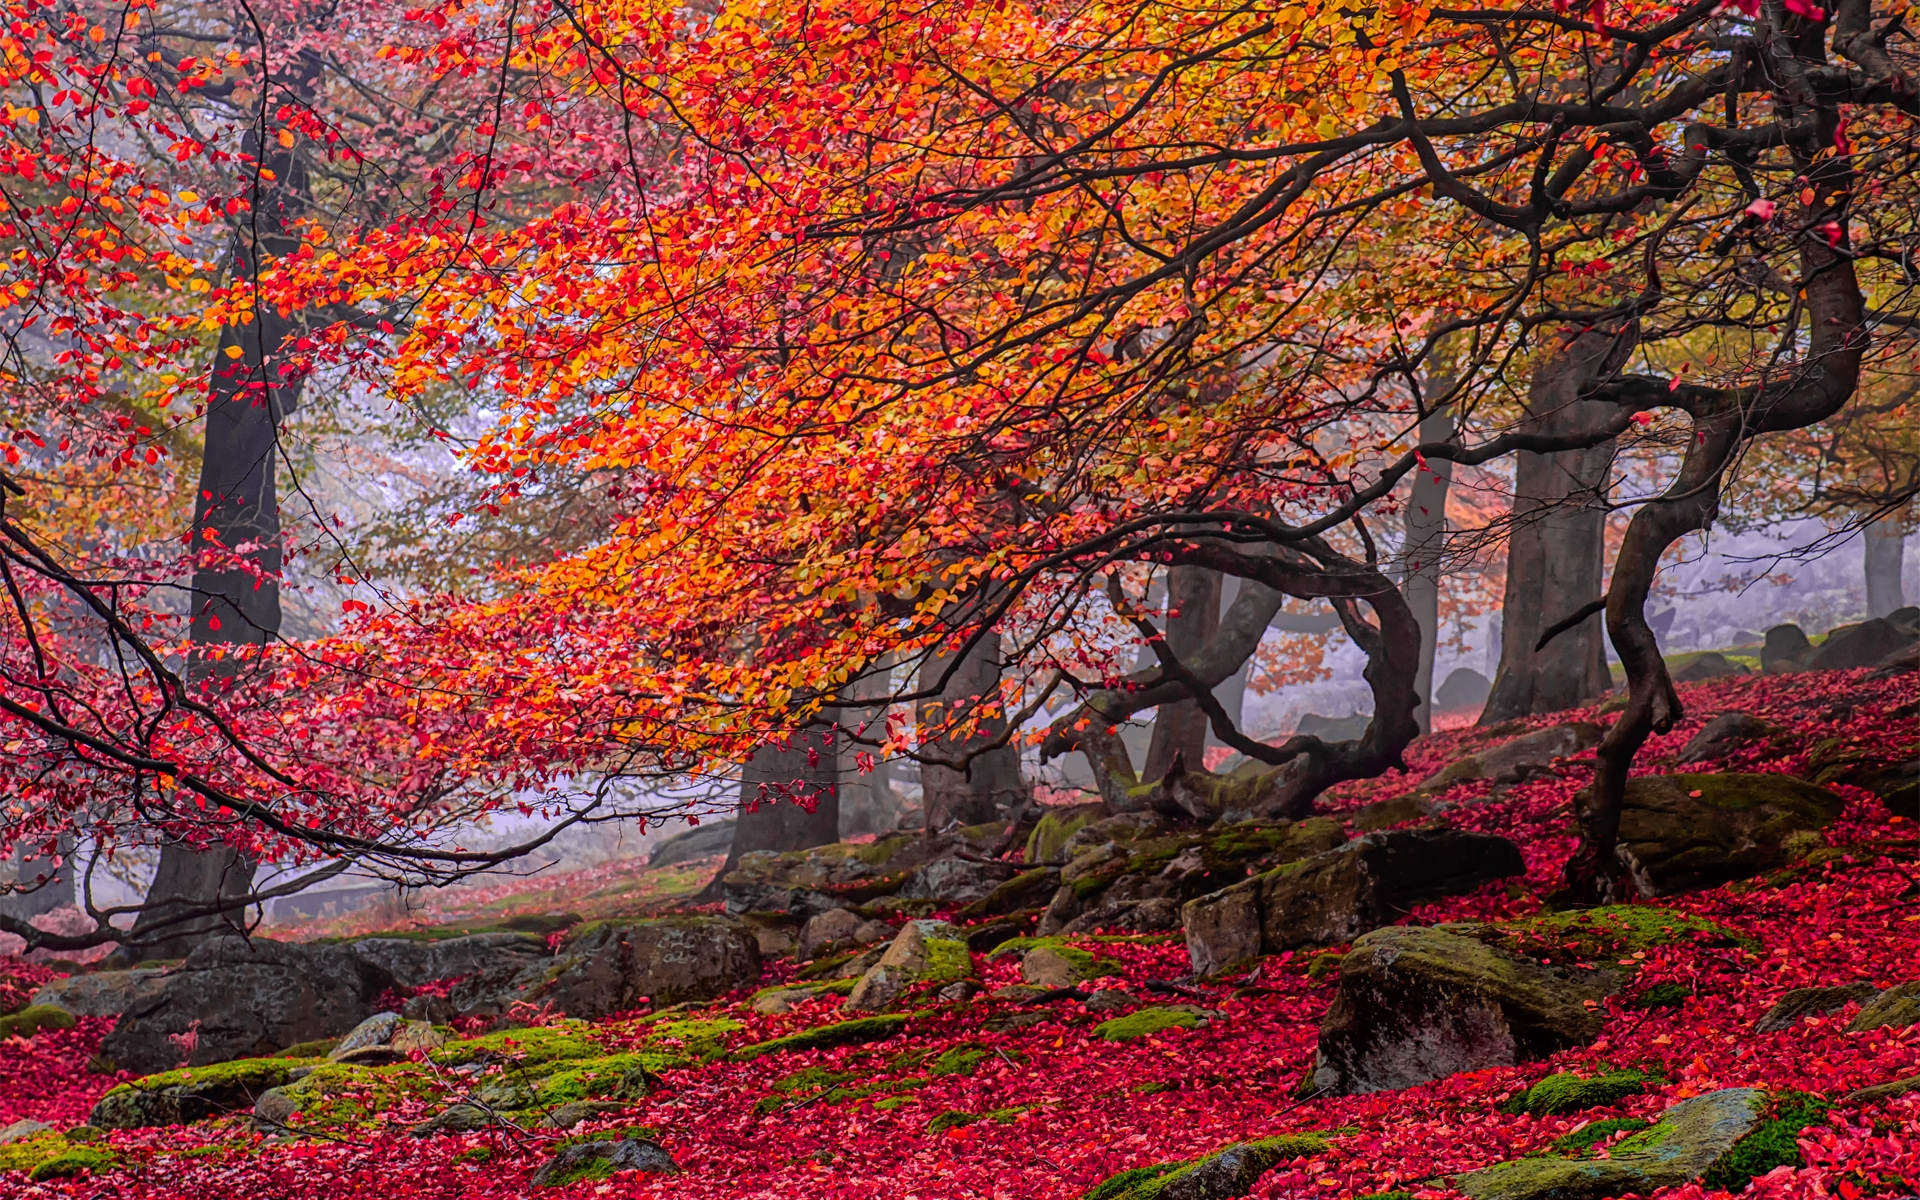 Скачать обои бесплатно Деревья, Осень, Дерево, Земля/природа картинка на рабочий стол ПК